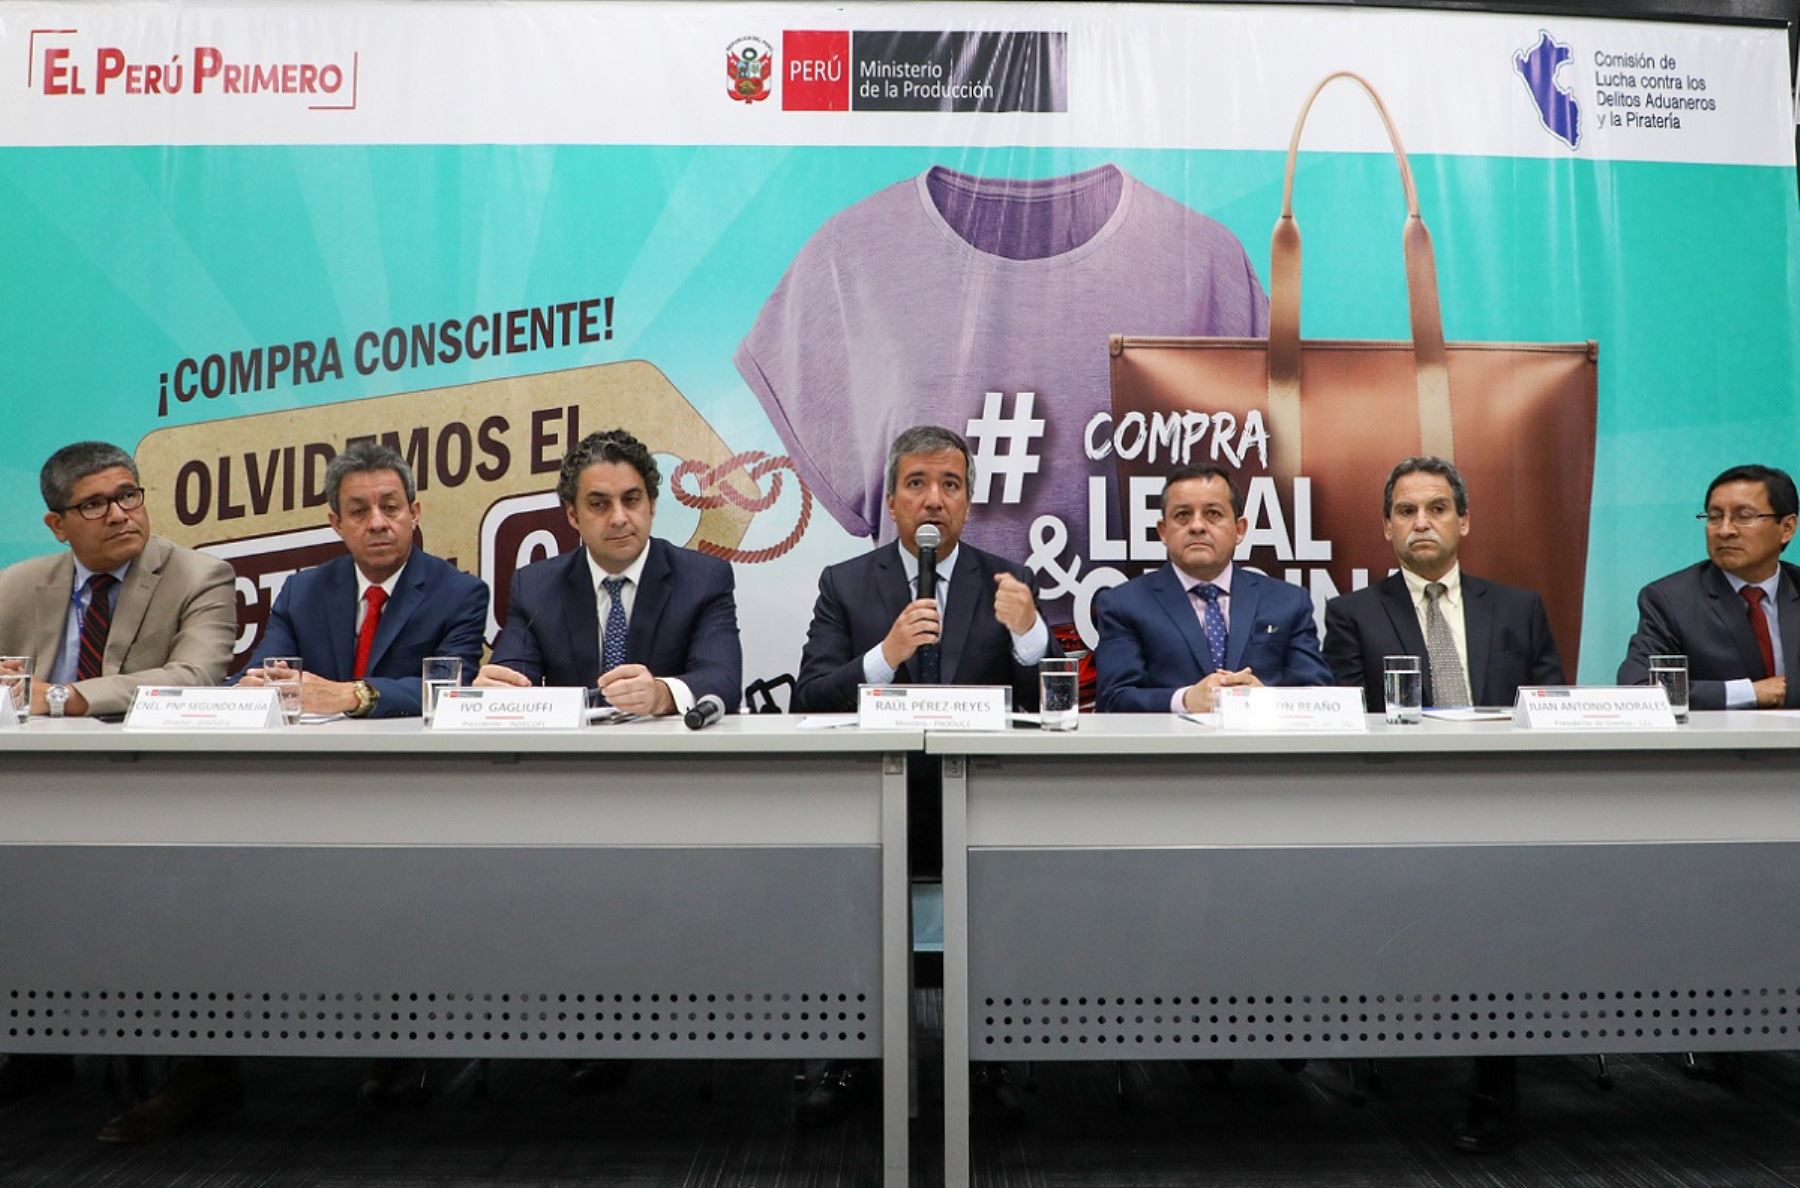 El ministro Raúl Pérez Reyes presentó la campaña "Compra legal, compra original"